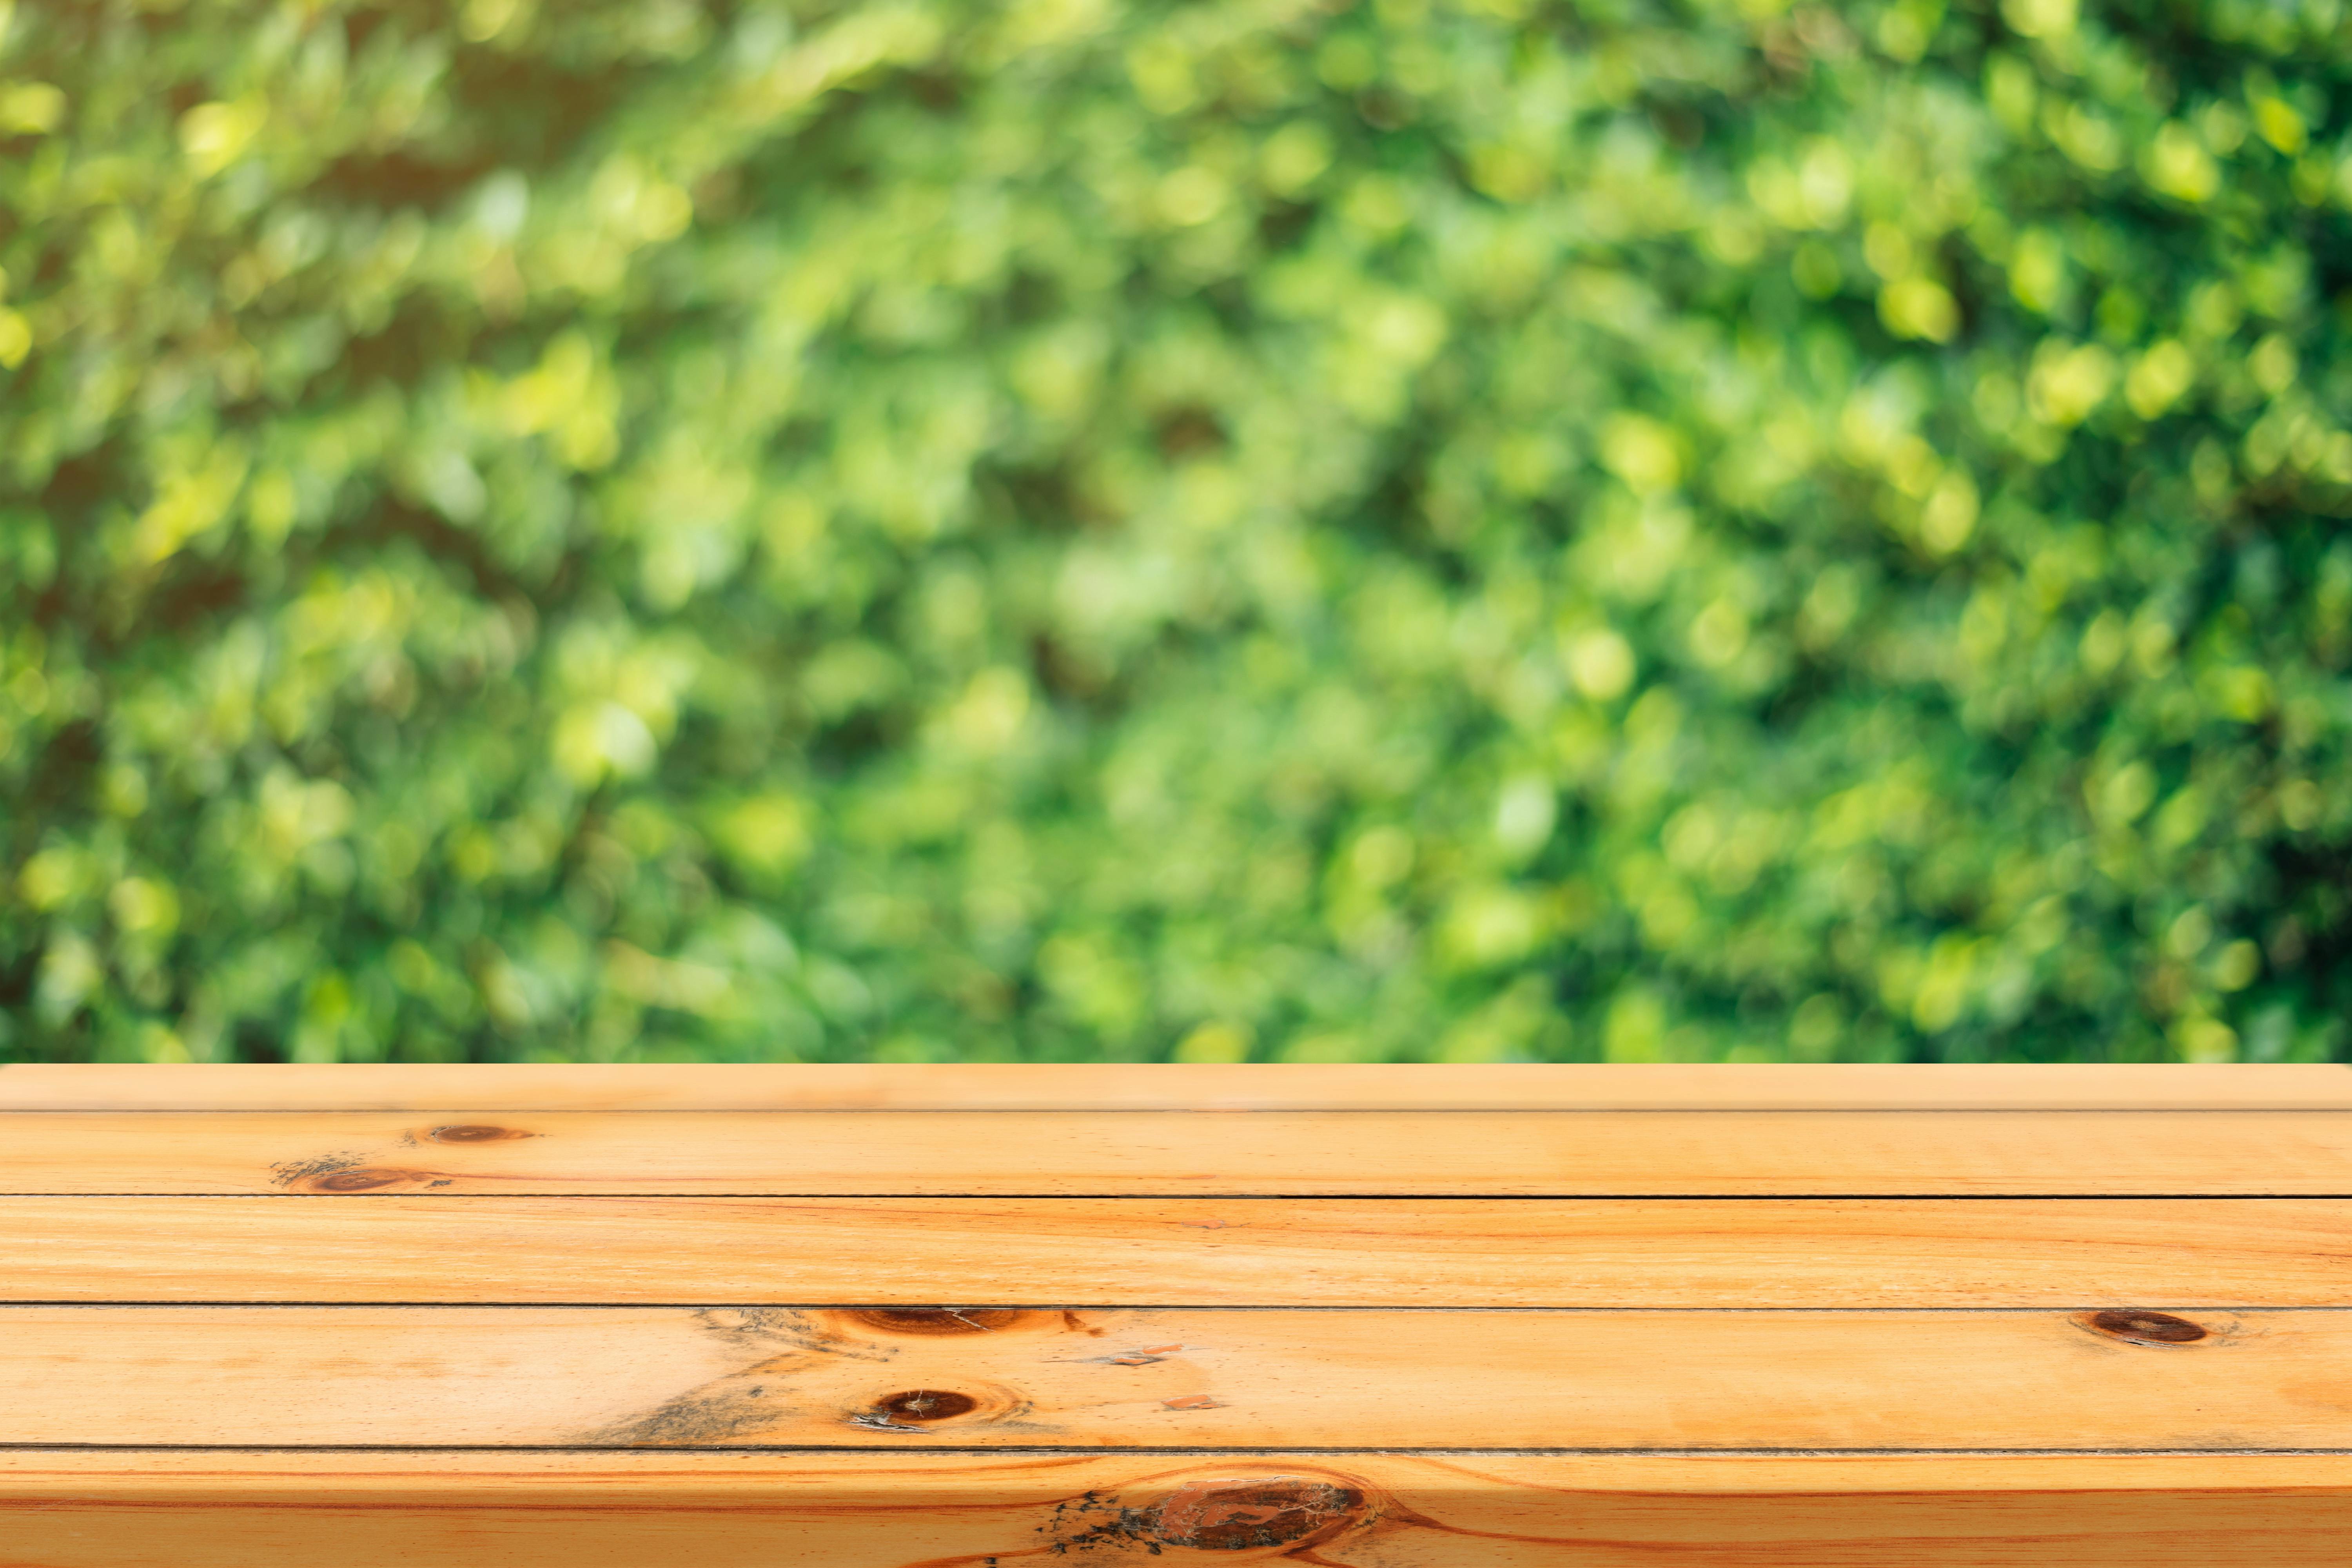 Bàn gỗ là một món đồ nội thất không thể thiếu trong bất cứ không gian sống nào. Với độ bền cao và tính thẩm mỹ đẹp, bàn gỗ là sự lựa chọn hoàn hảo cho mọi gia đình. Hãy xem hình ảnh bàn gỗ để tìm kiếm những thiết kế đẹp và độc đáo nhất cho ngôi nhà của bạn.